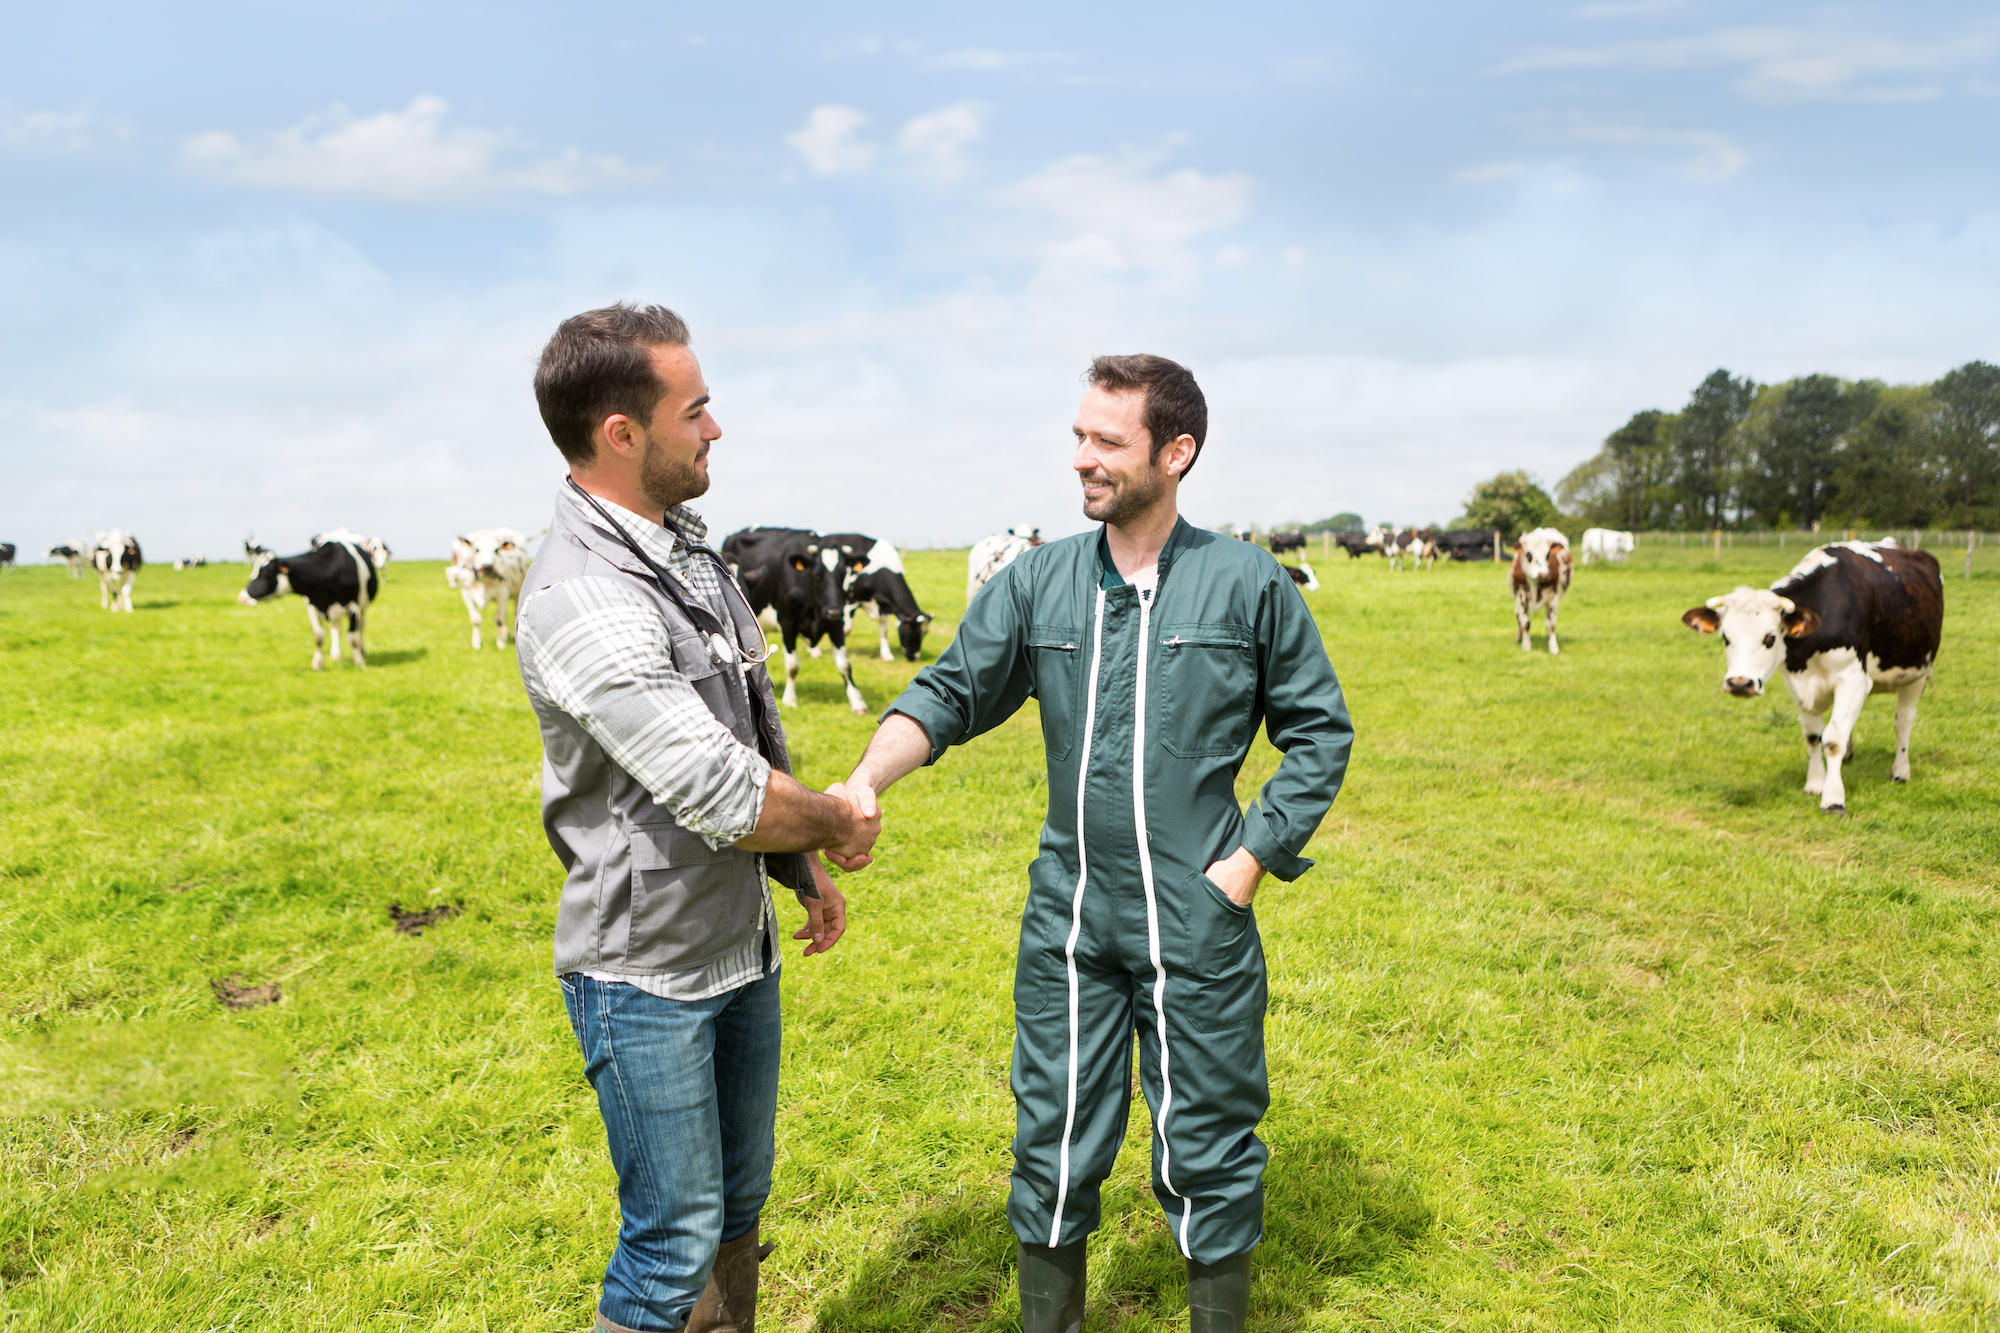 2 éleveurs se serrant la main dans un champ, des vaches en arrière-plan